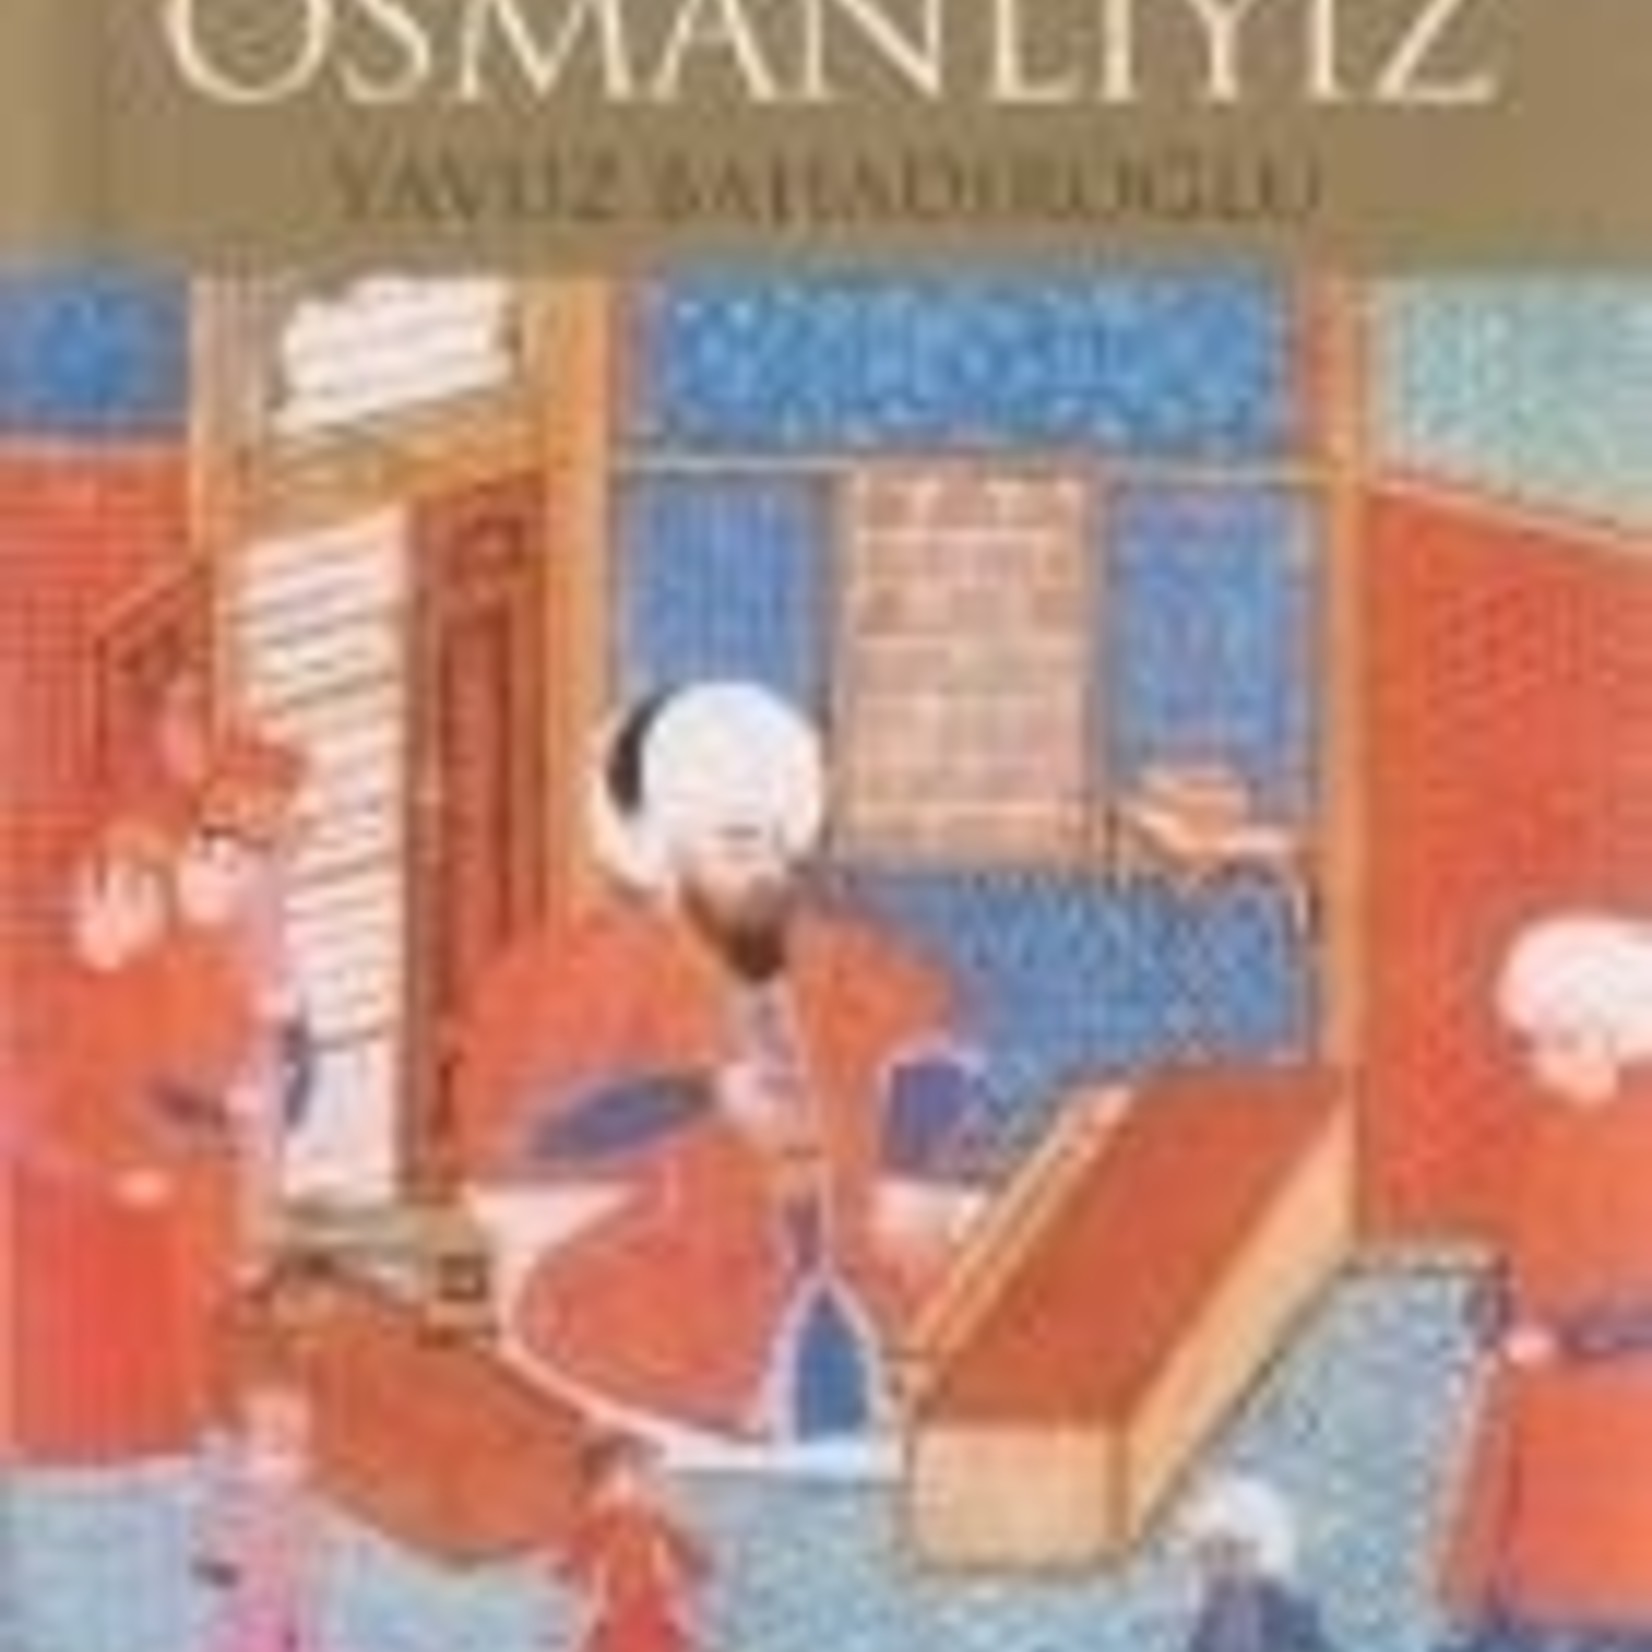 Biz Osmanliyiz